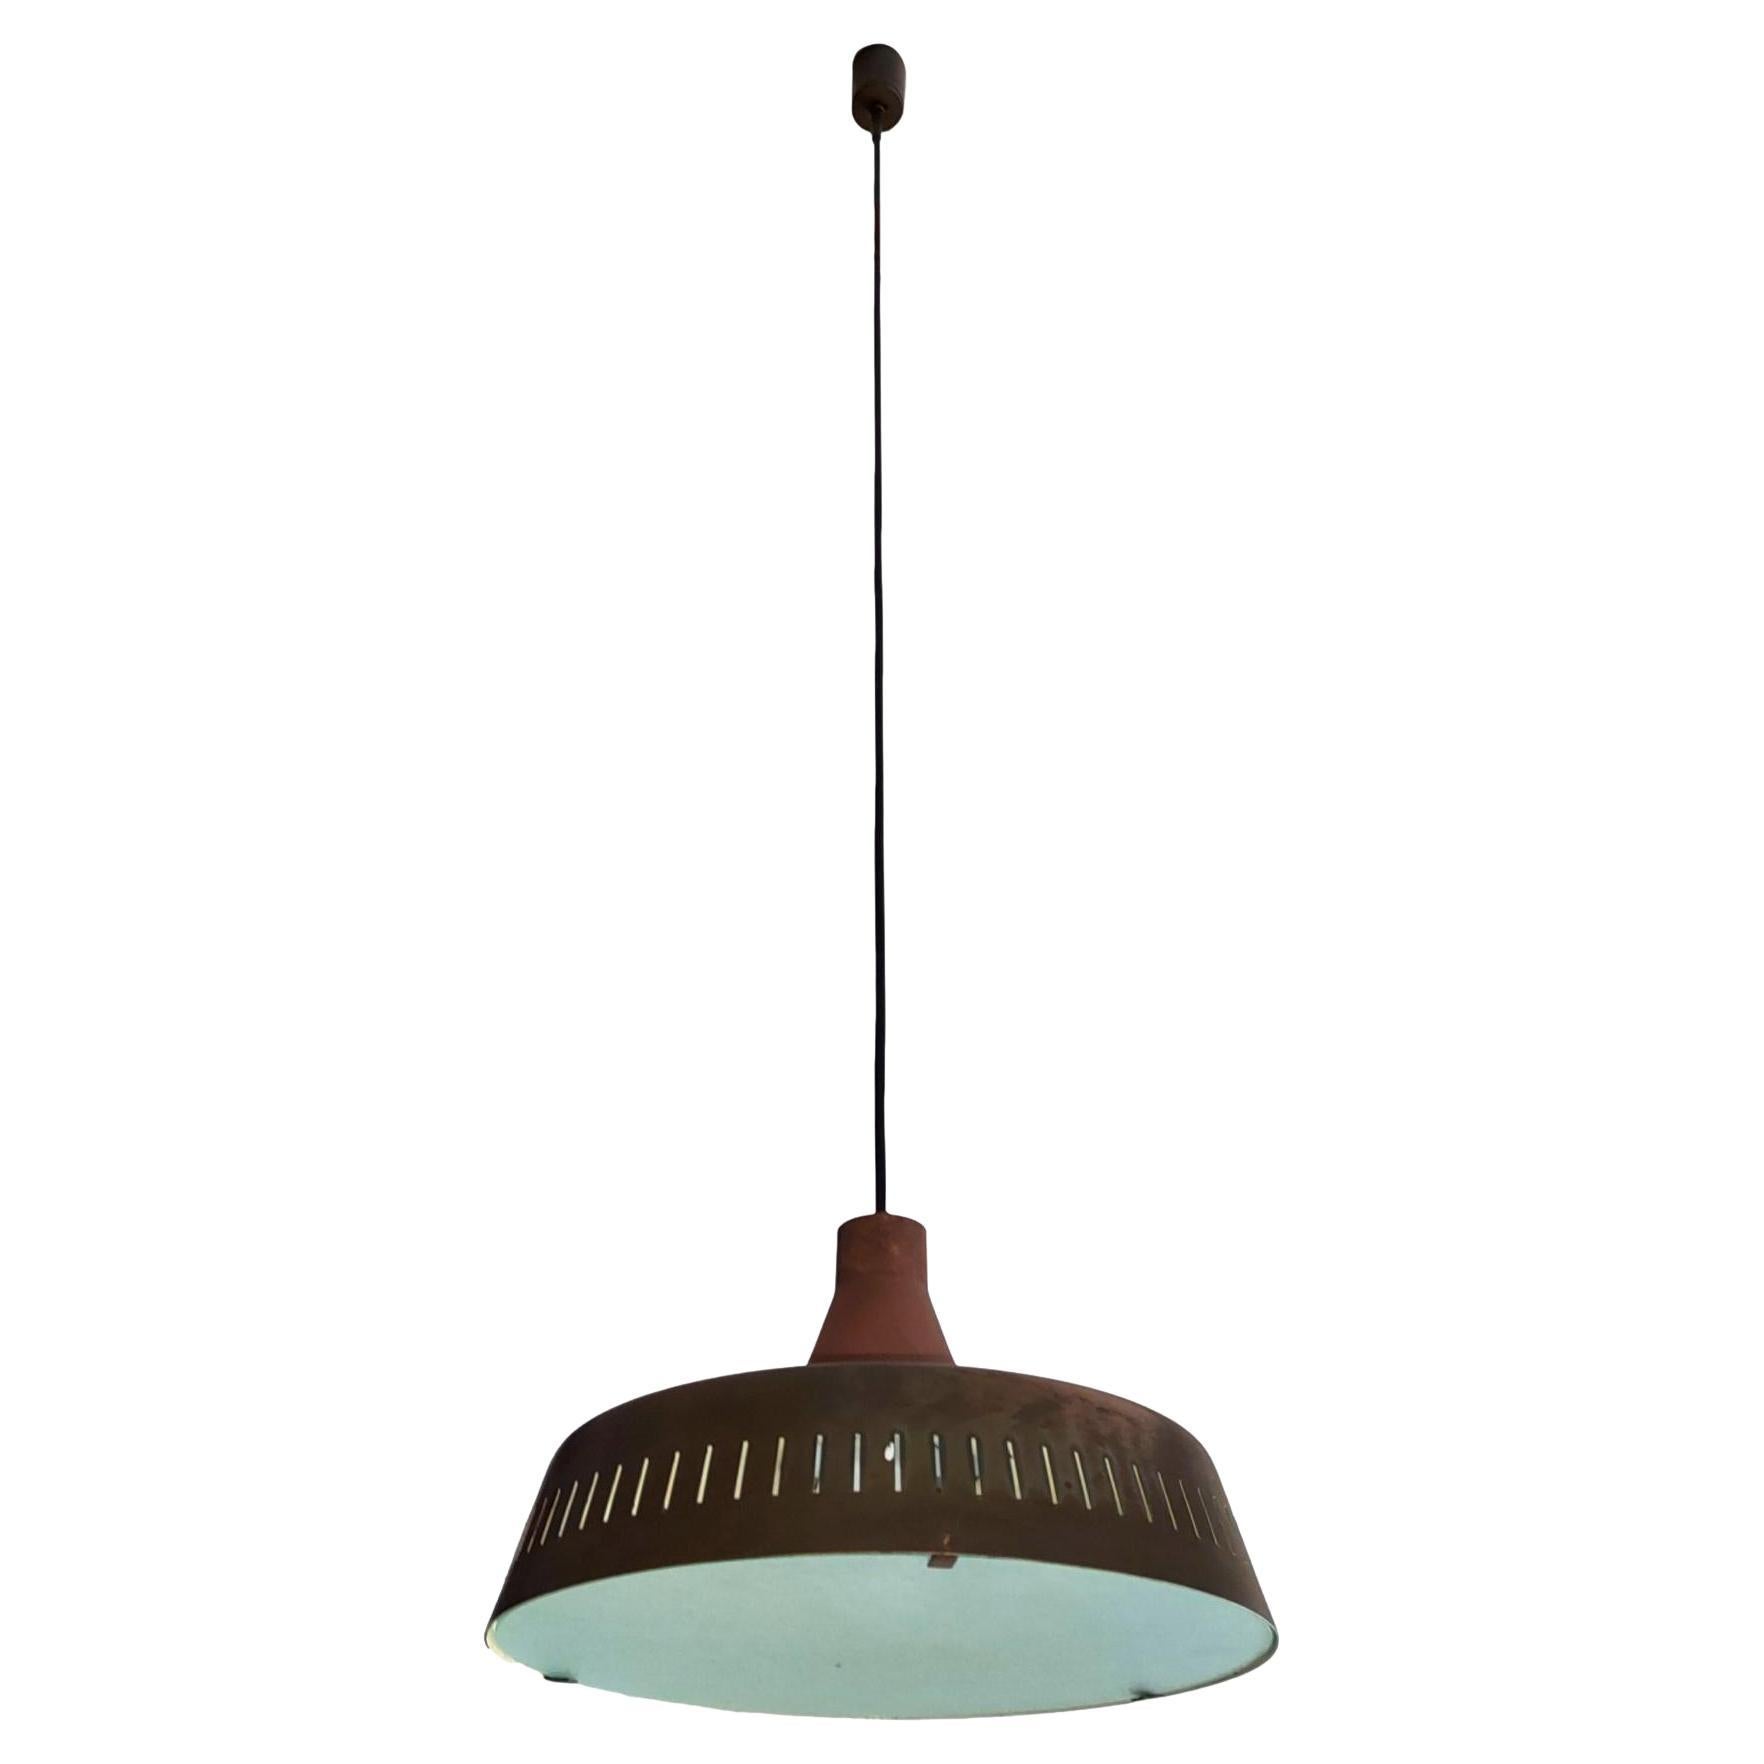 rare chandelier pendant design max ingrand for fontana arte 2233 model 1962 For Sale